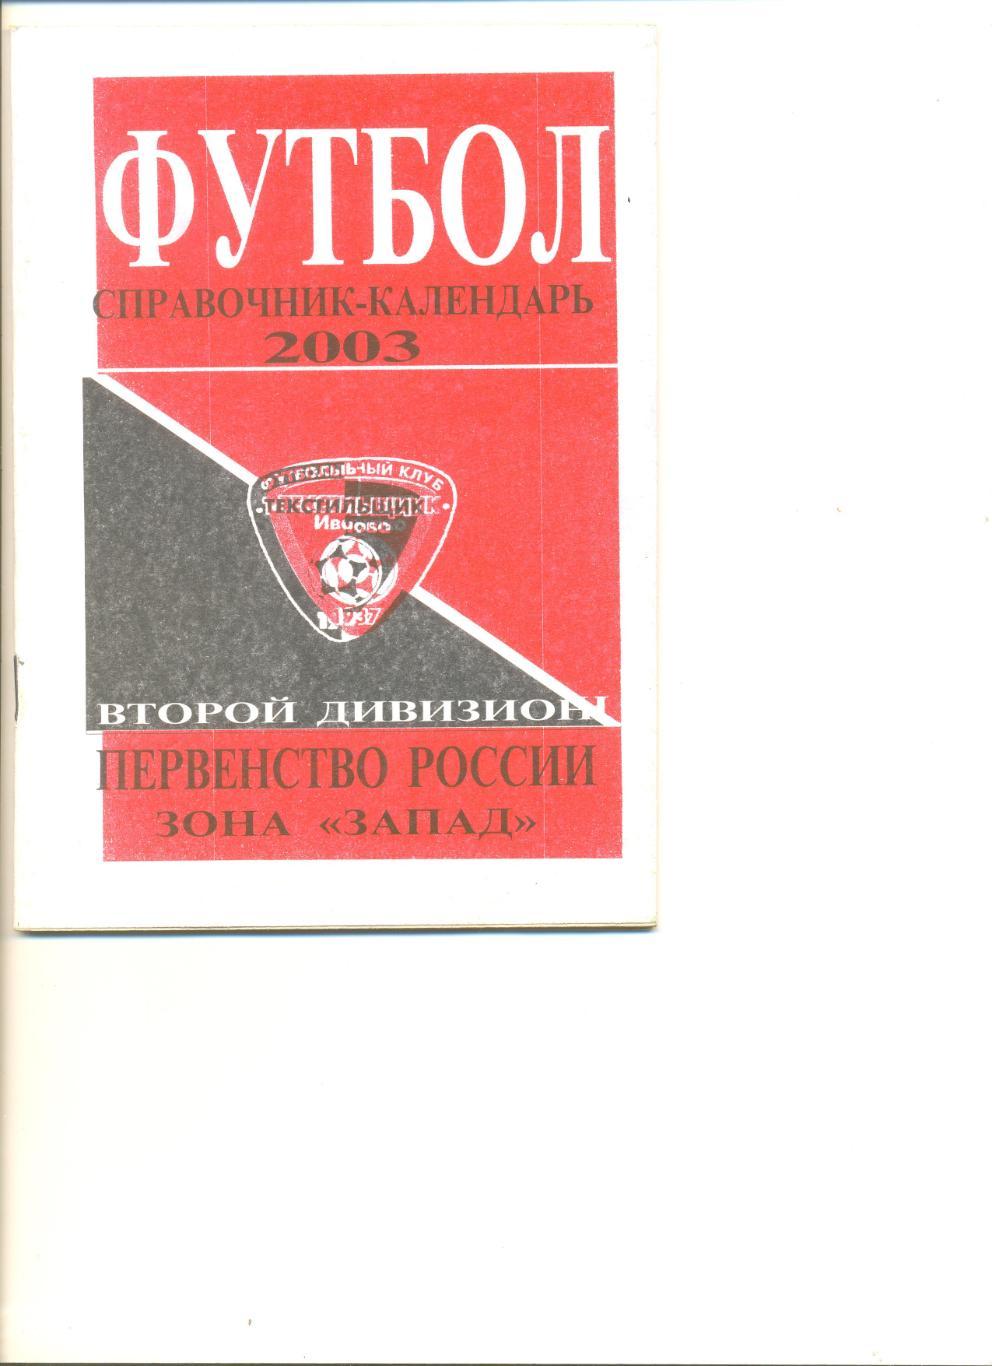 Иваново -2003 г. Календарь-справочник. Тираж 500 шт.